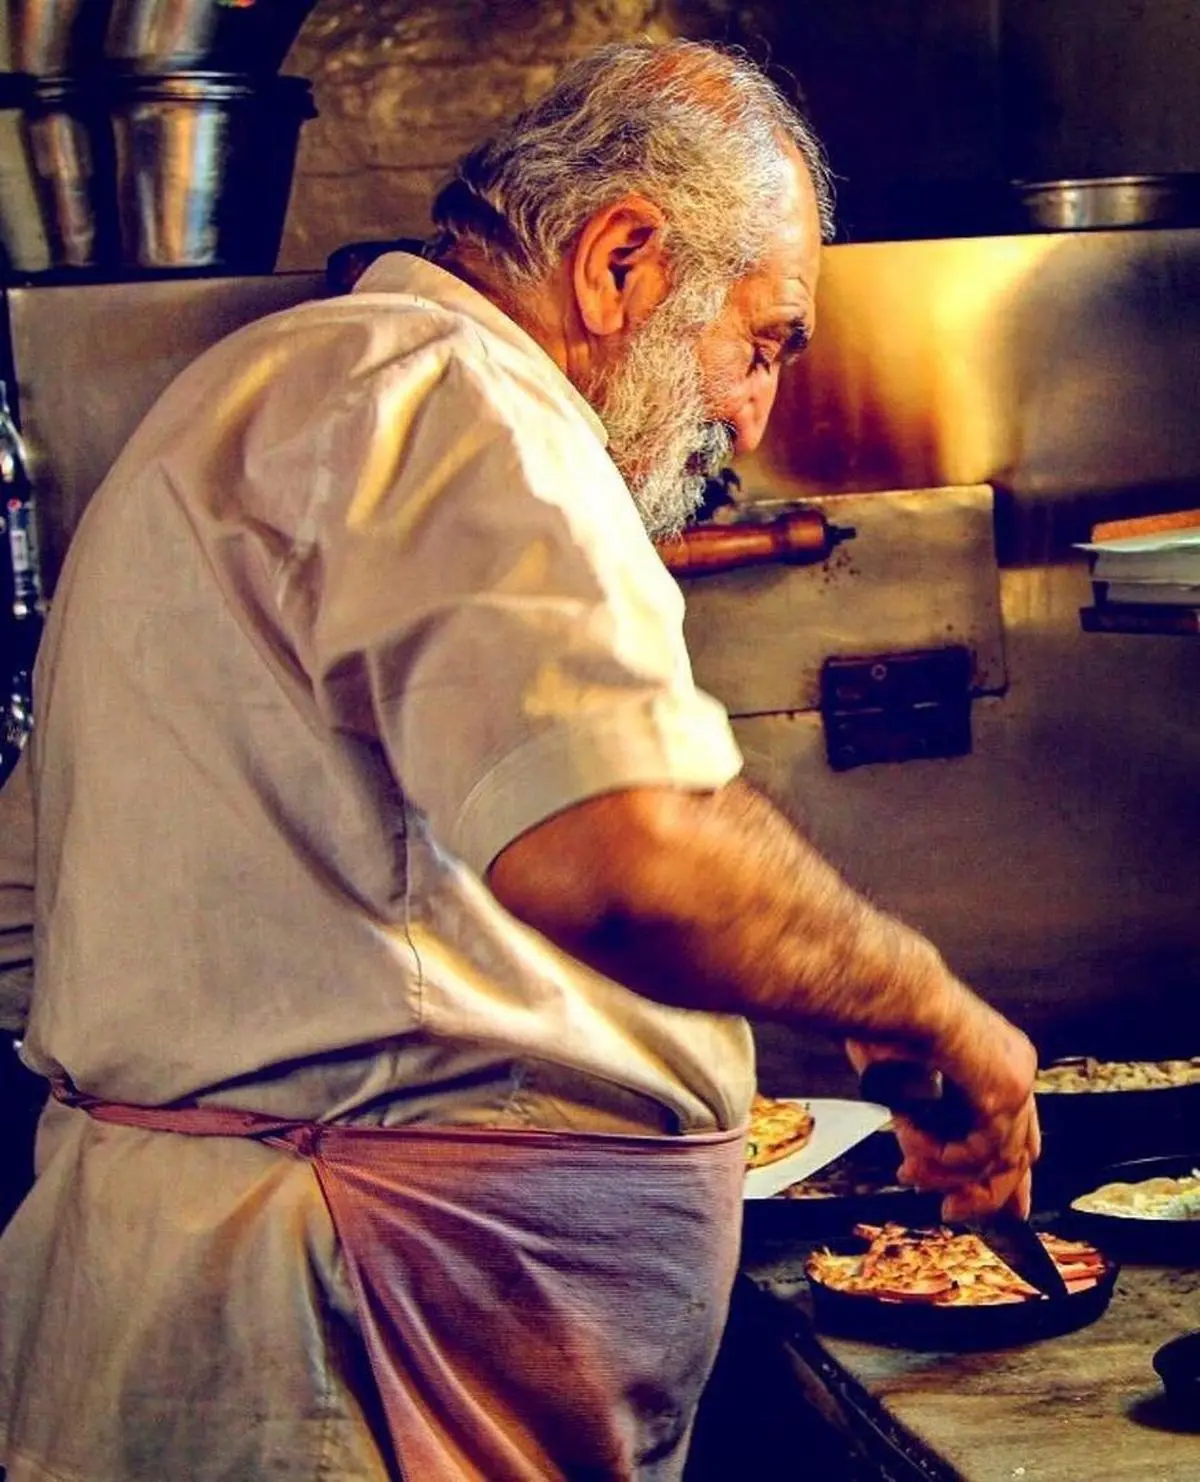 
عمو داوود، قدیمی ترین پیتزا فروش تهران درگذشت
